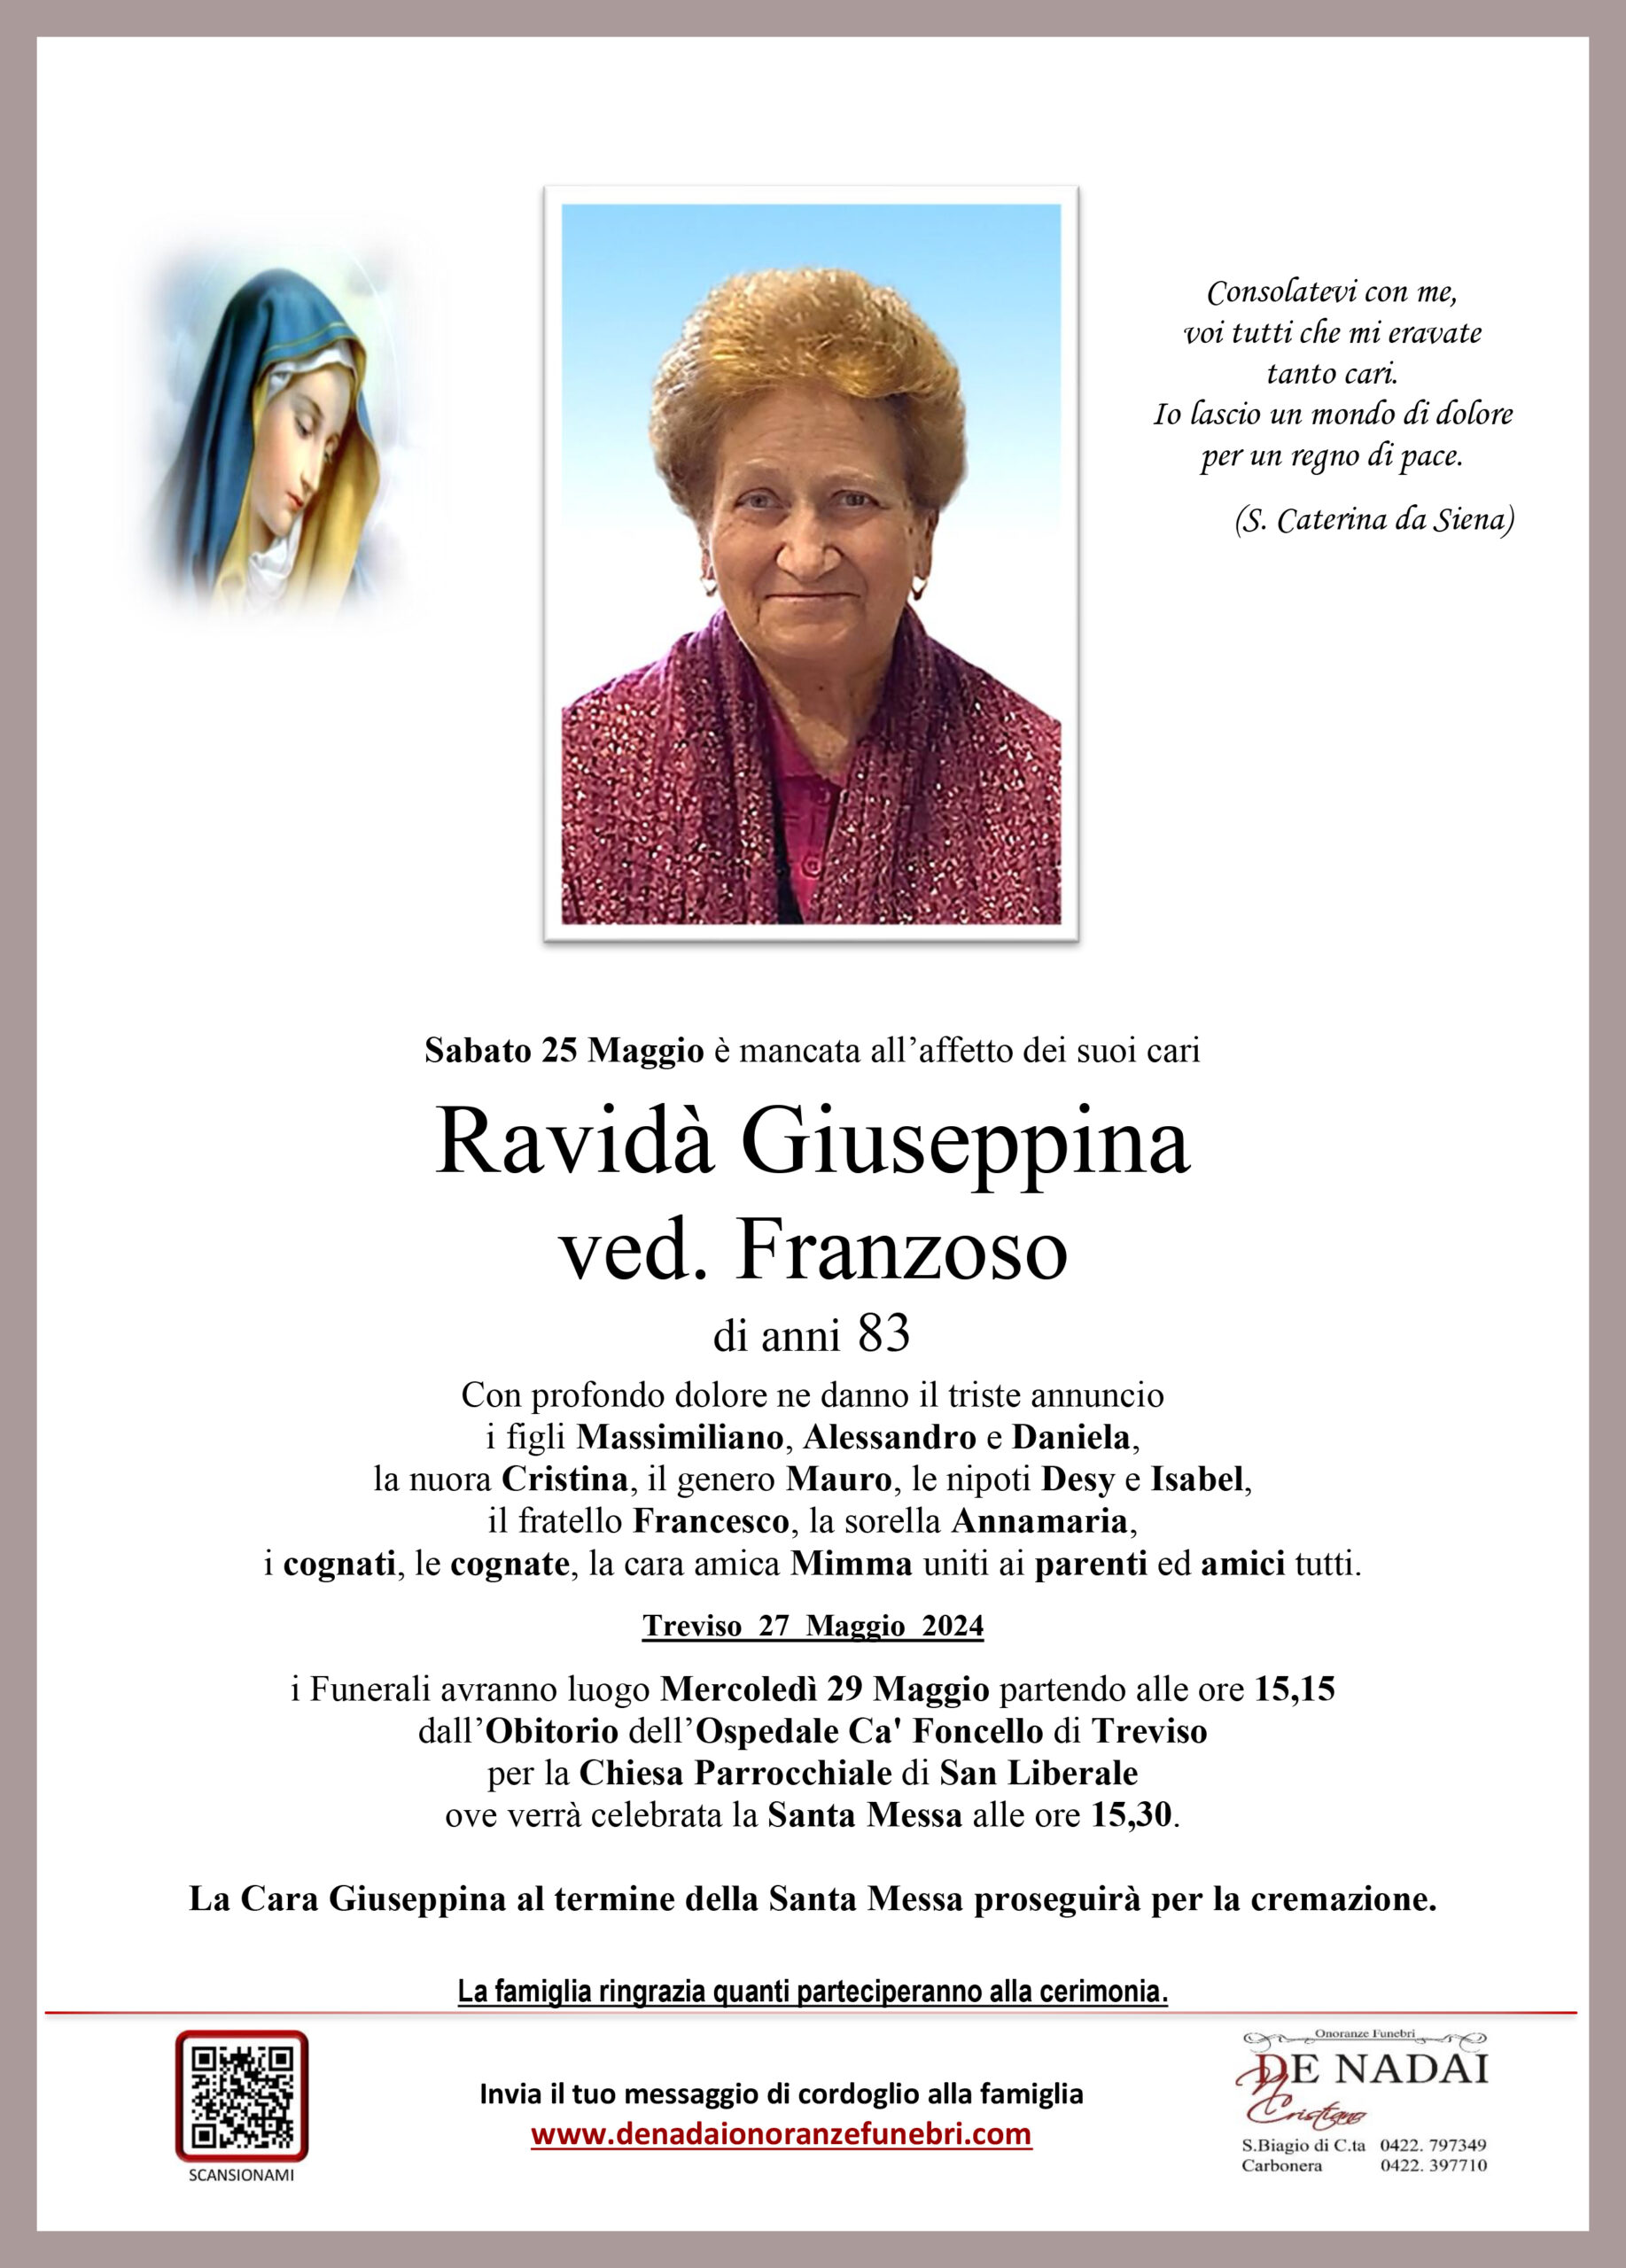 Ravidà Giuseppina